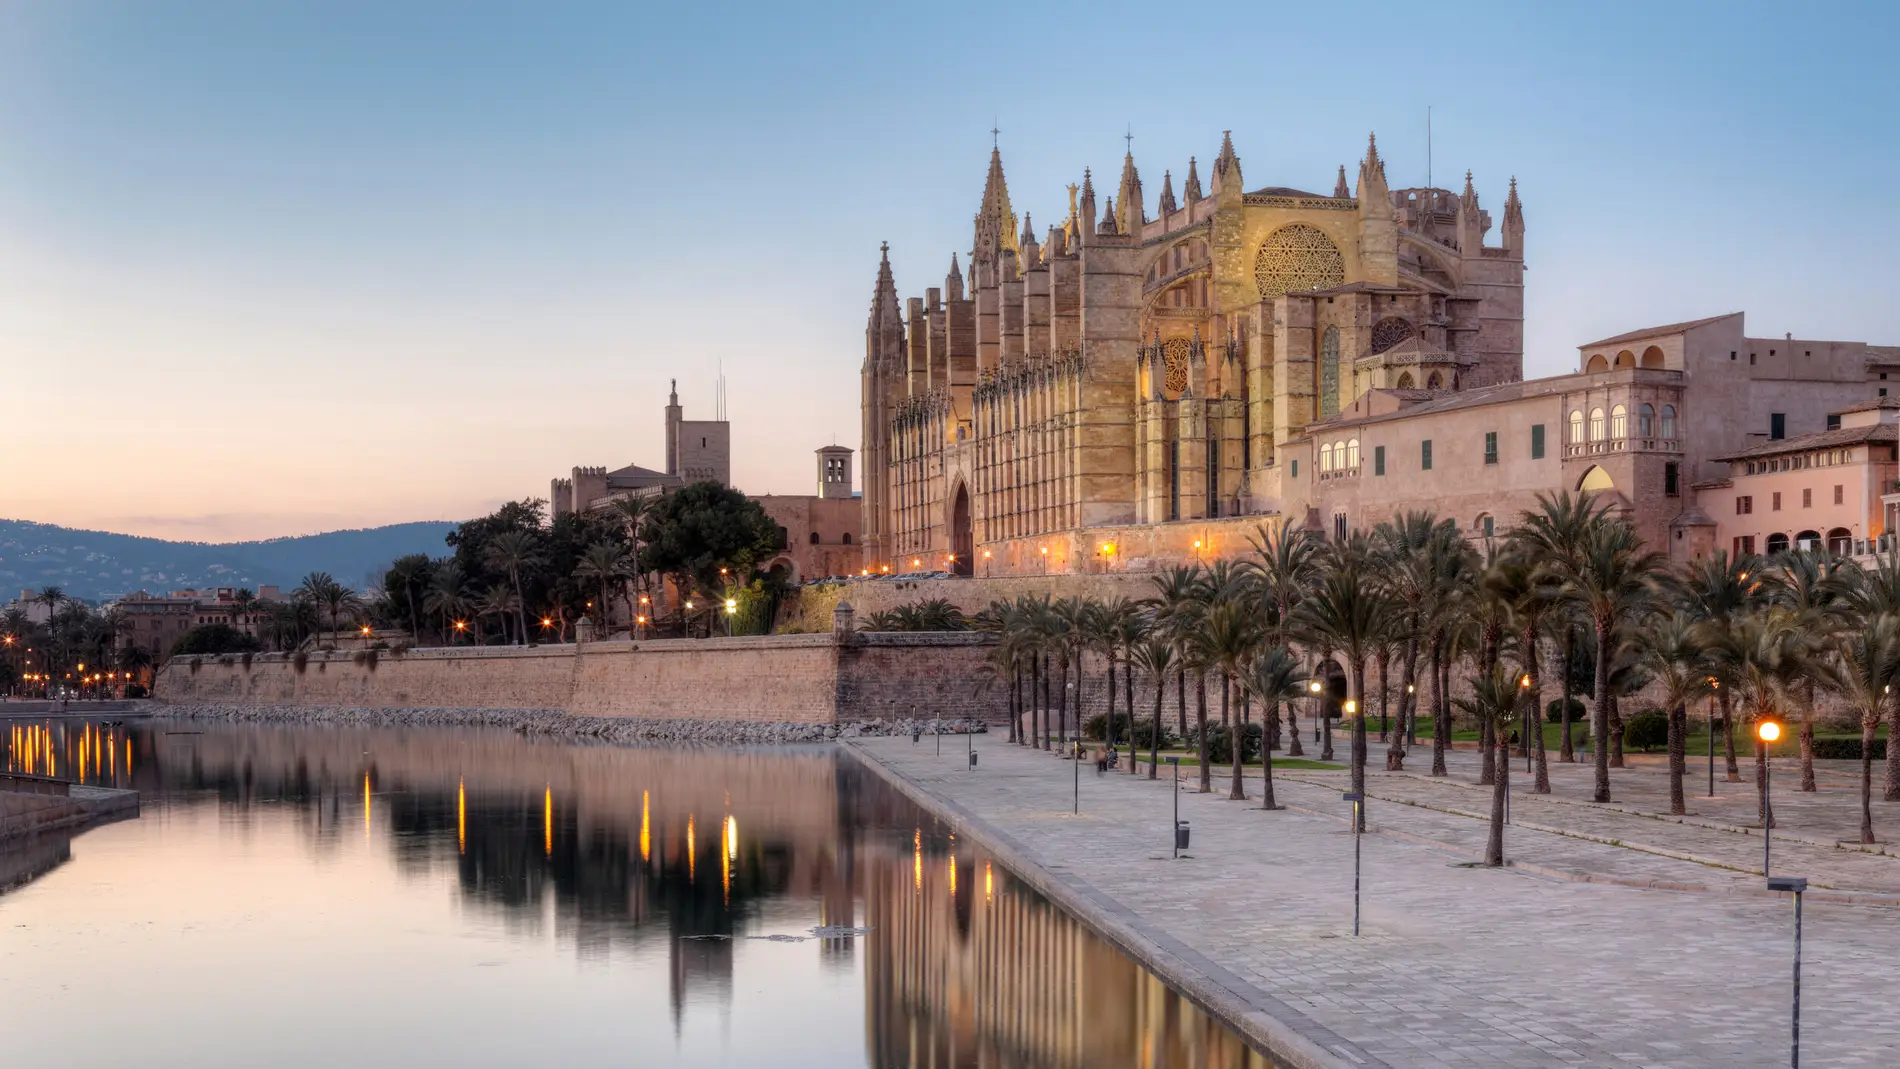 Atardecer en el Parc de la Mar de Palma, con la Catedral de Mallorca y el Palacio Real de La Almudaina al fondo